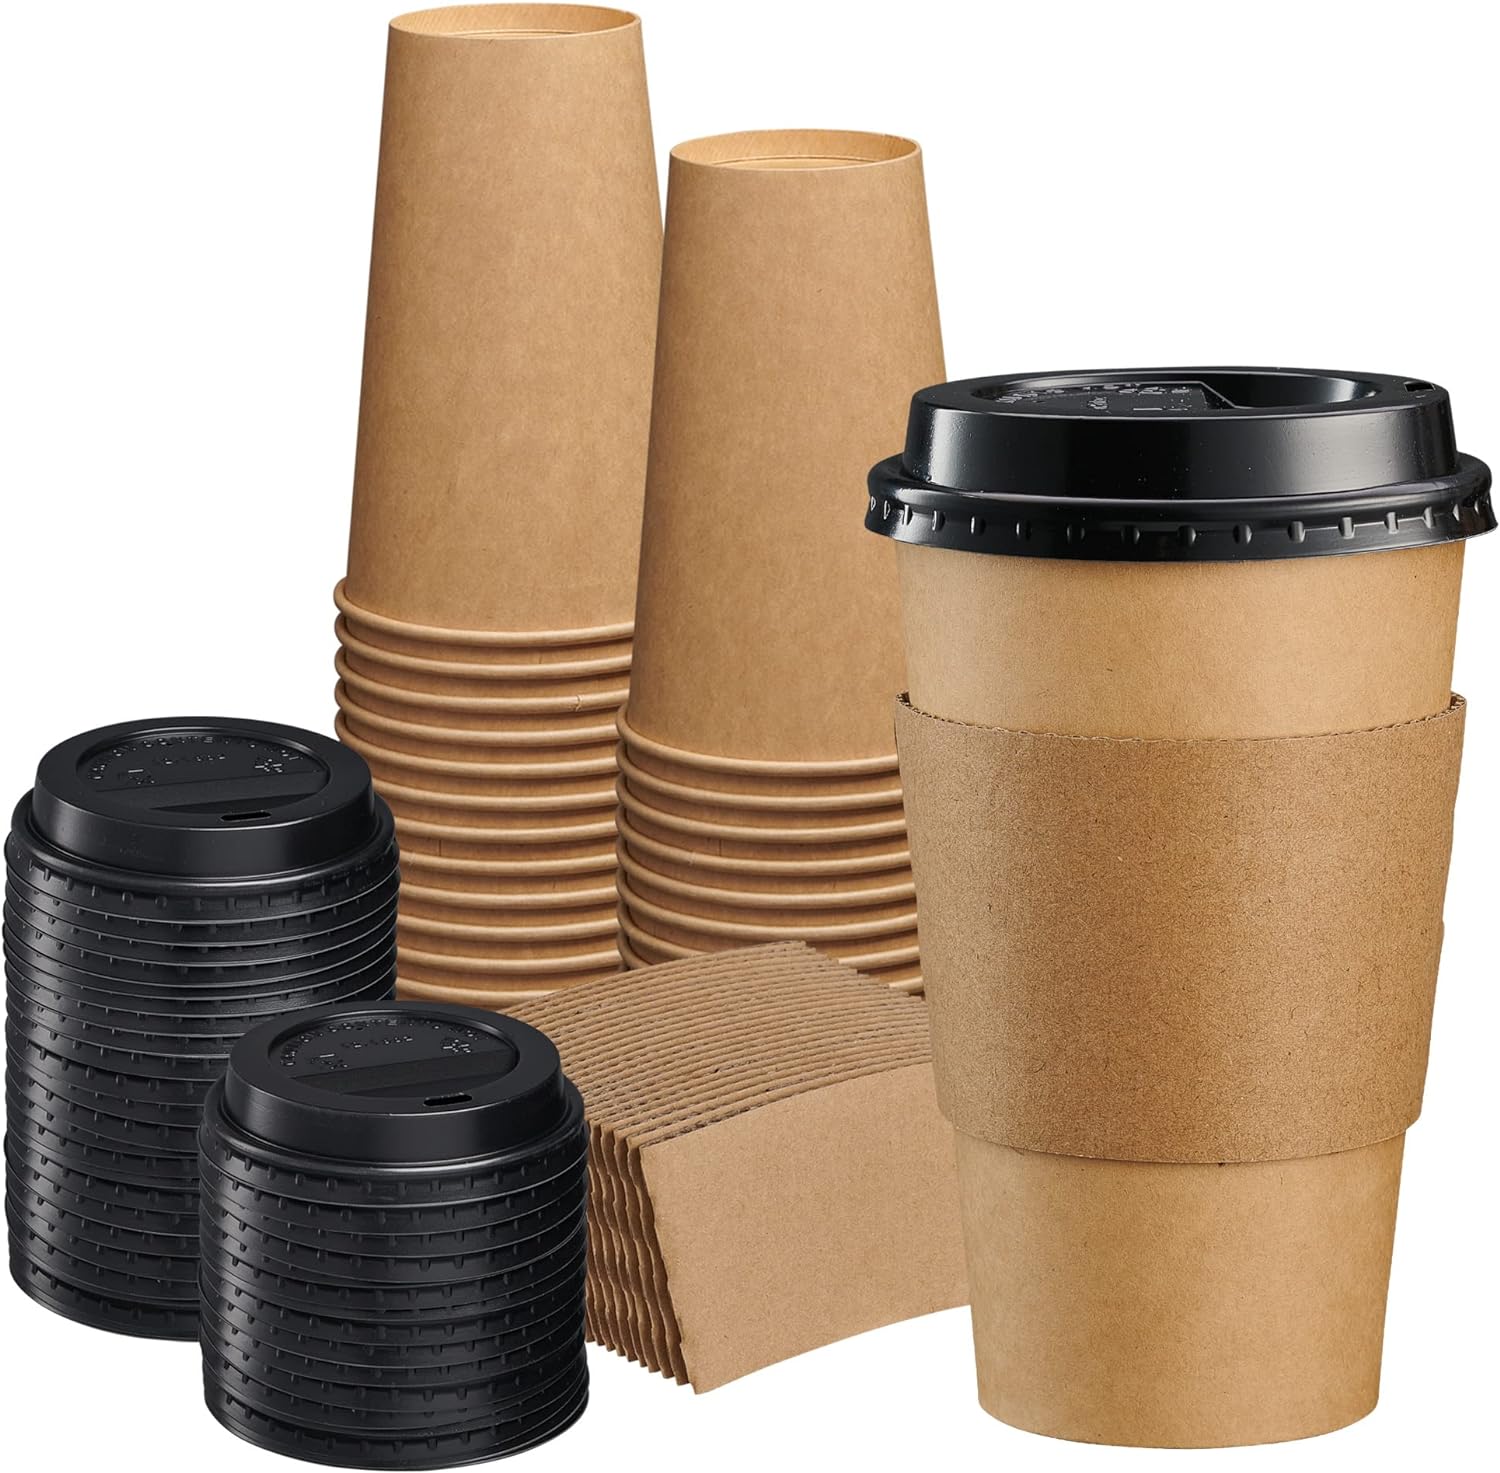 Takeaway kaffesett, Kraft papirkopper med lokk og sleeves, 400ml, 100stk